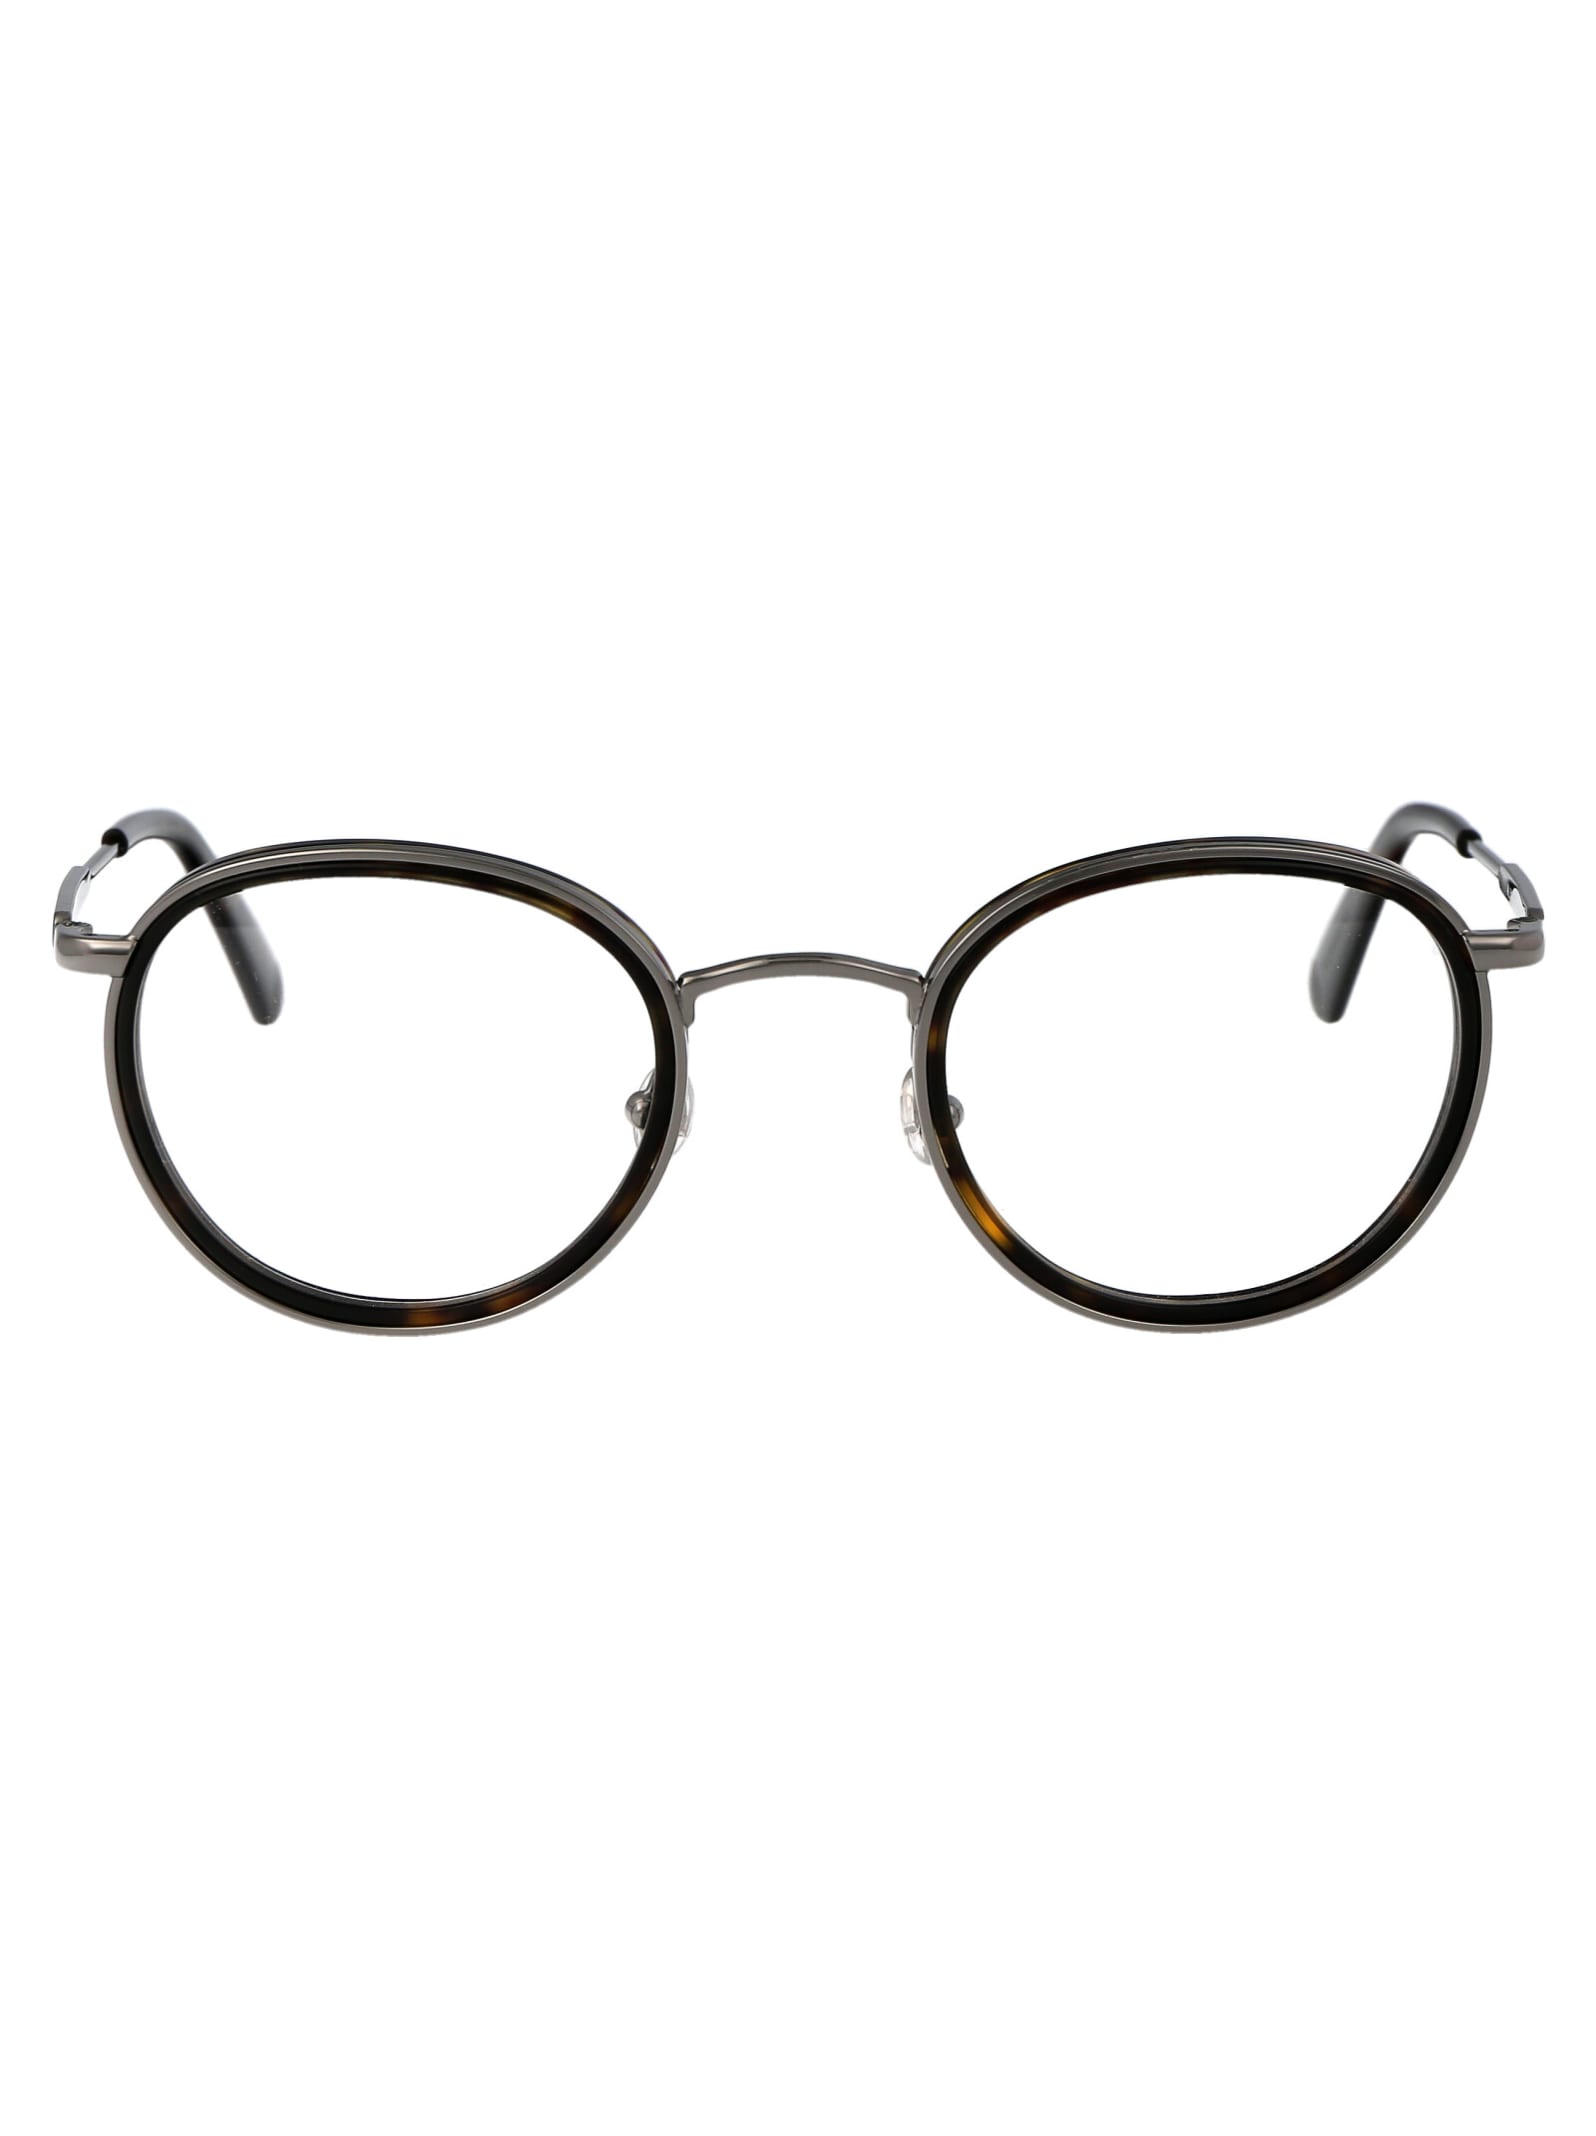 Moncler Ml5153 Glasses In 005 Nero/monocolore